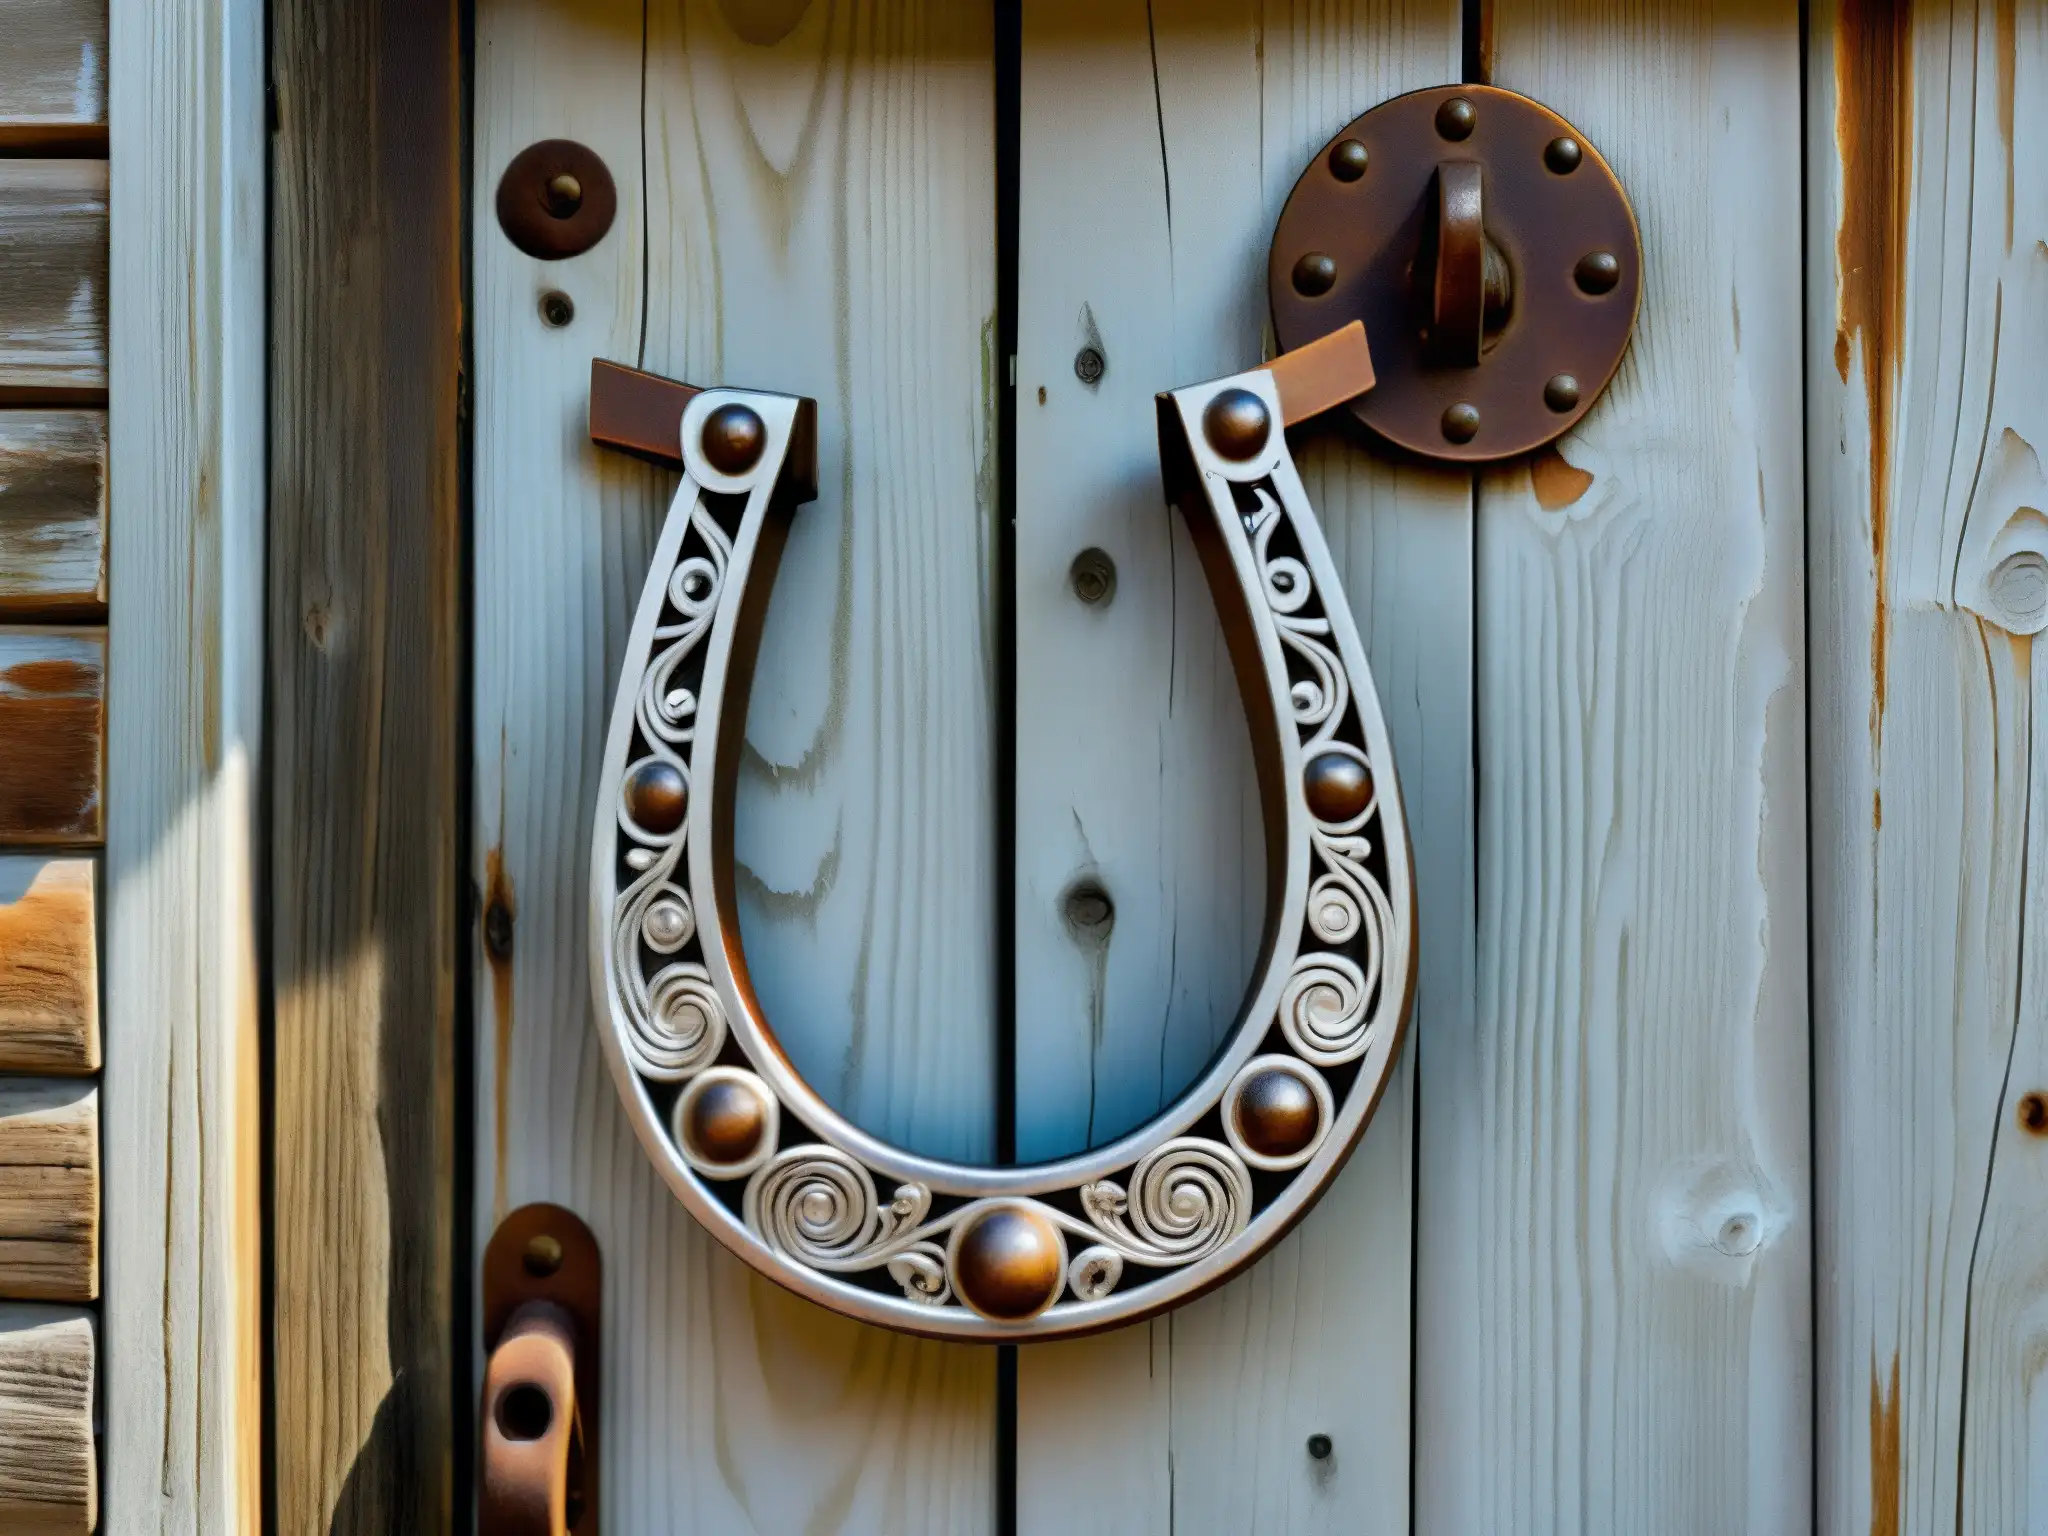 Una herradura oxidada cuelga de una puerta de madera antigua, destacando el contraste entre lo rústico y lo metálico